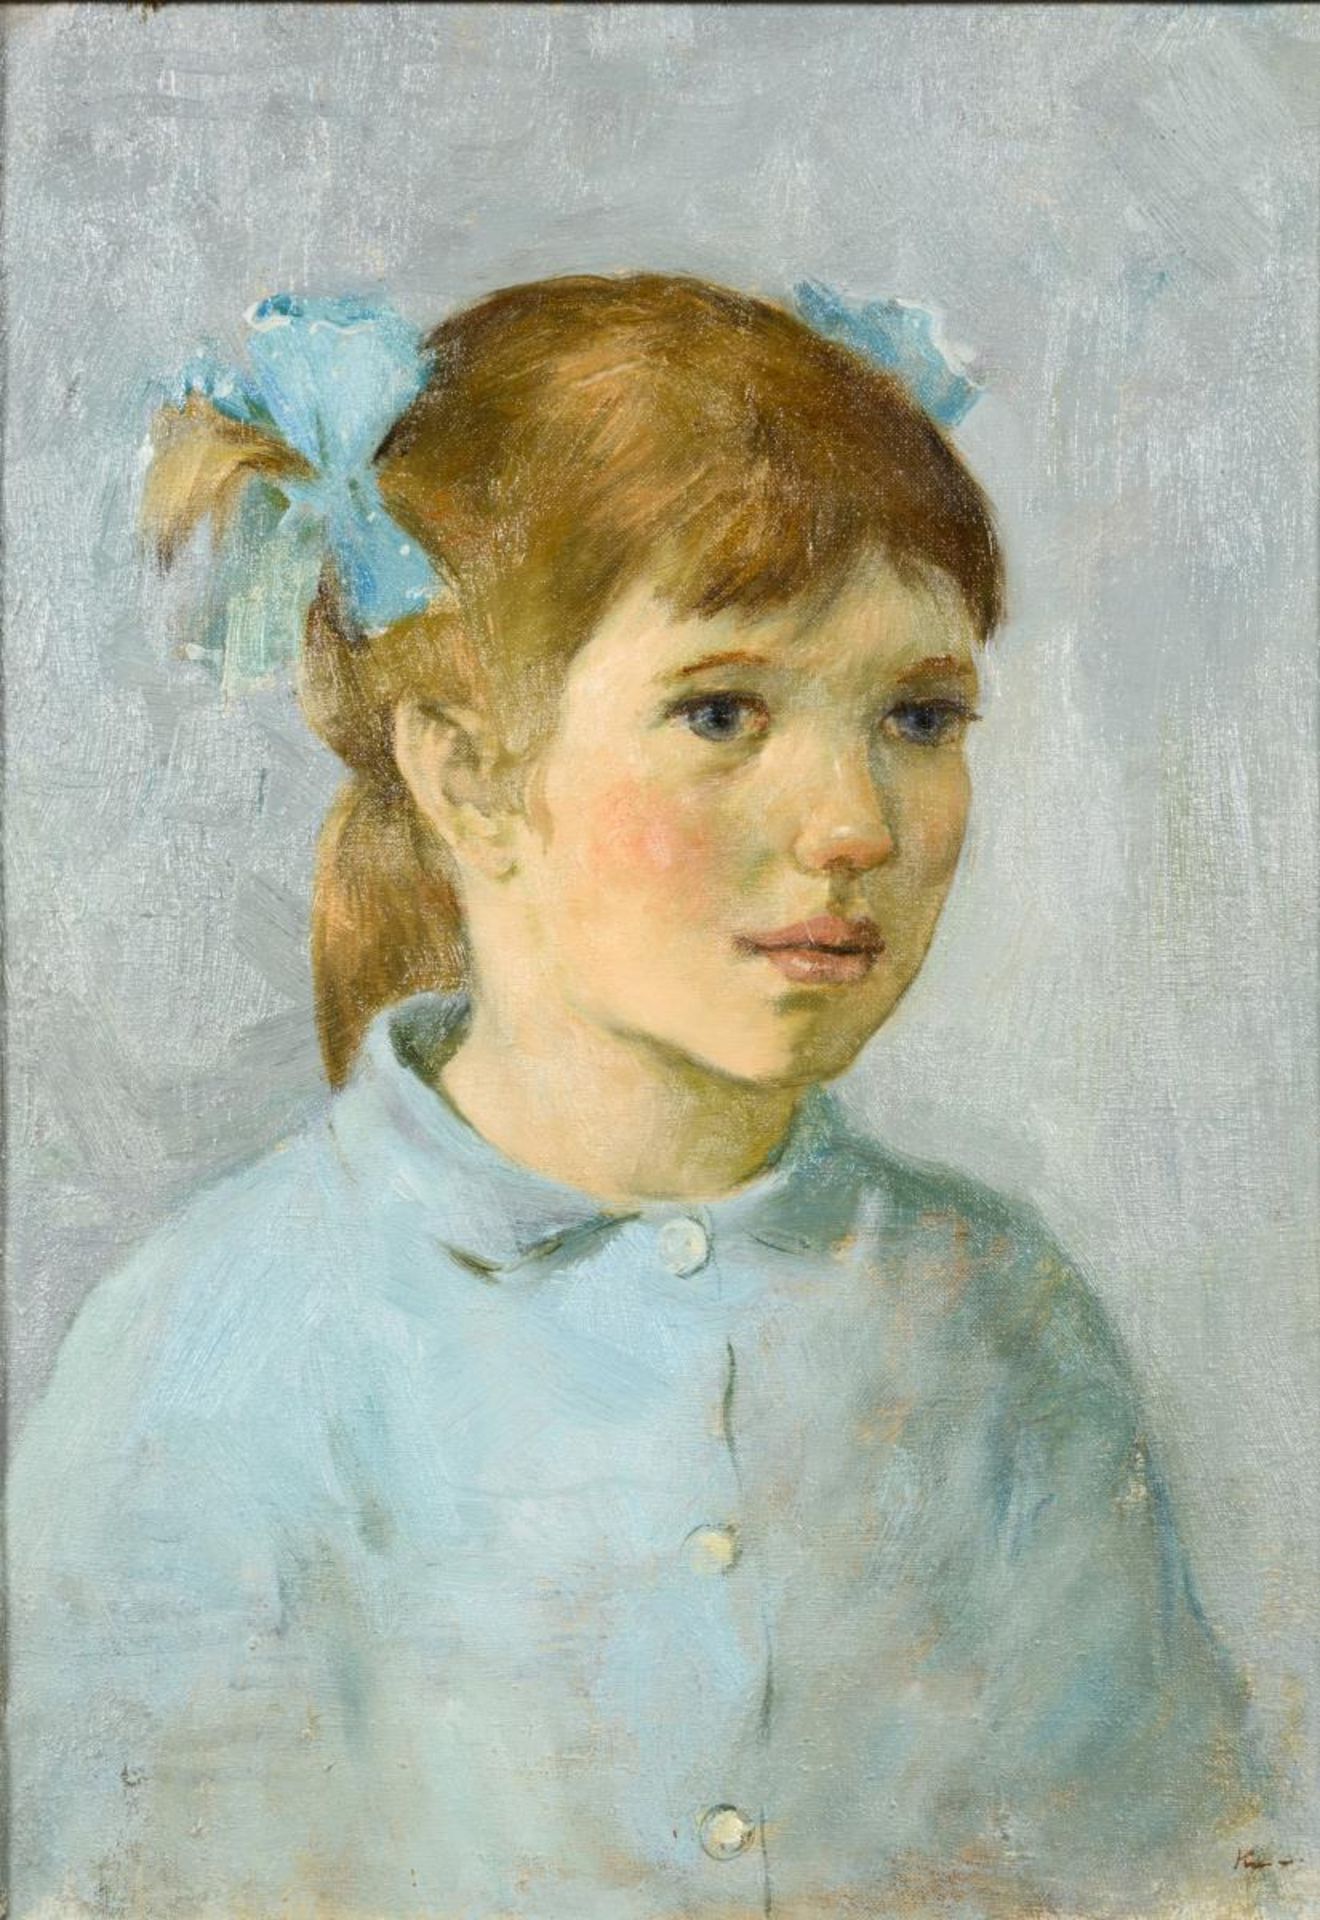 KUSMITSCHEW. Mädchenporträt in Blau.